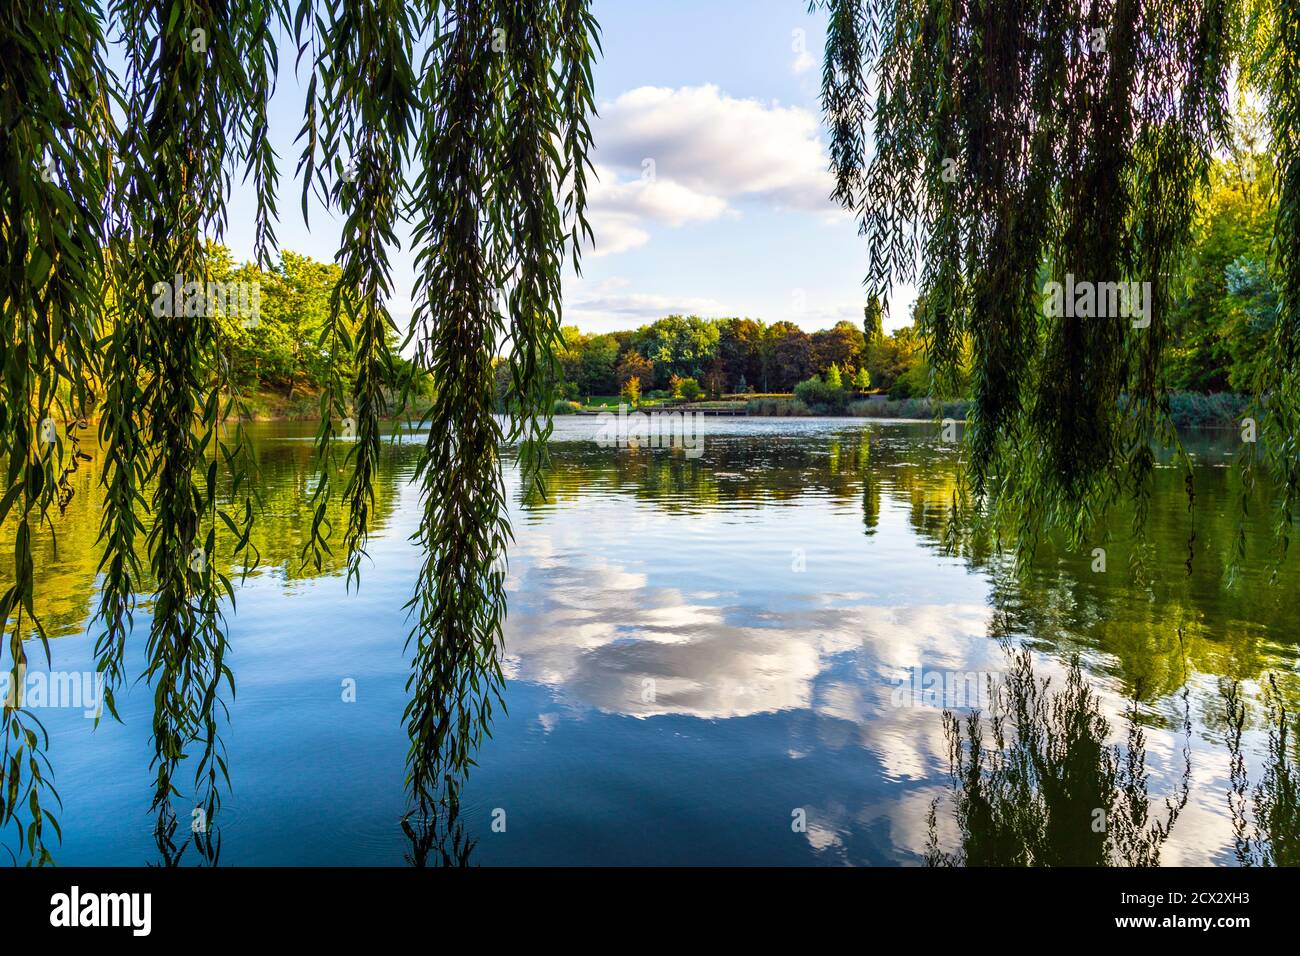 Des branches de saule pleurant se reflétant dans un lac au parc Szczesliwicki (parc Szczęśliwicki), district d'Ochota, Varsovie, Pologne Banque D'Images